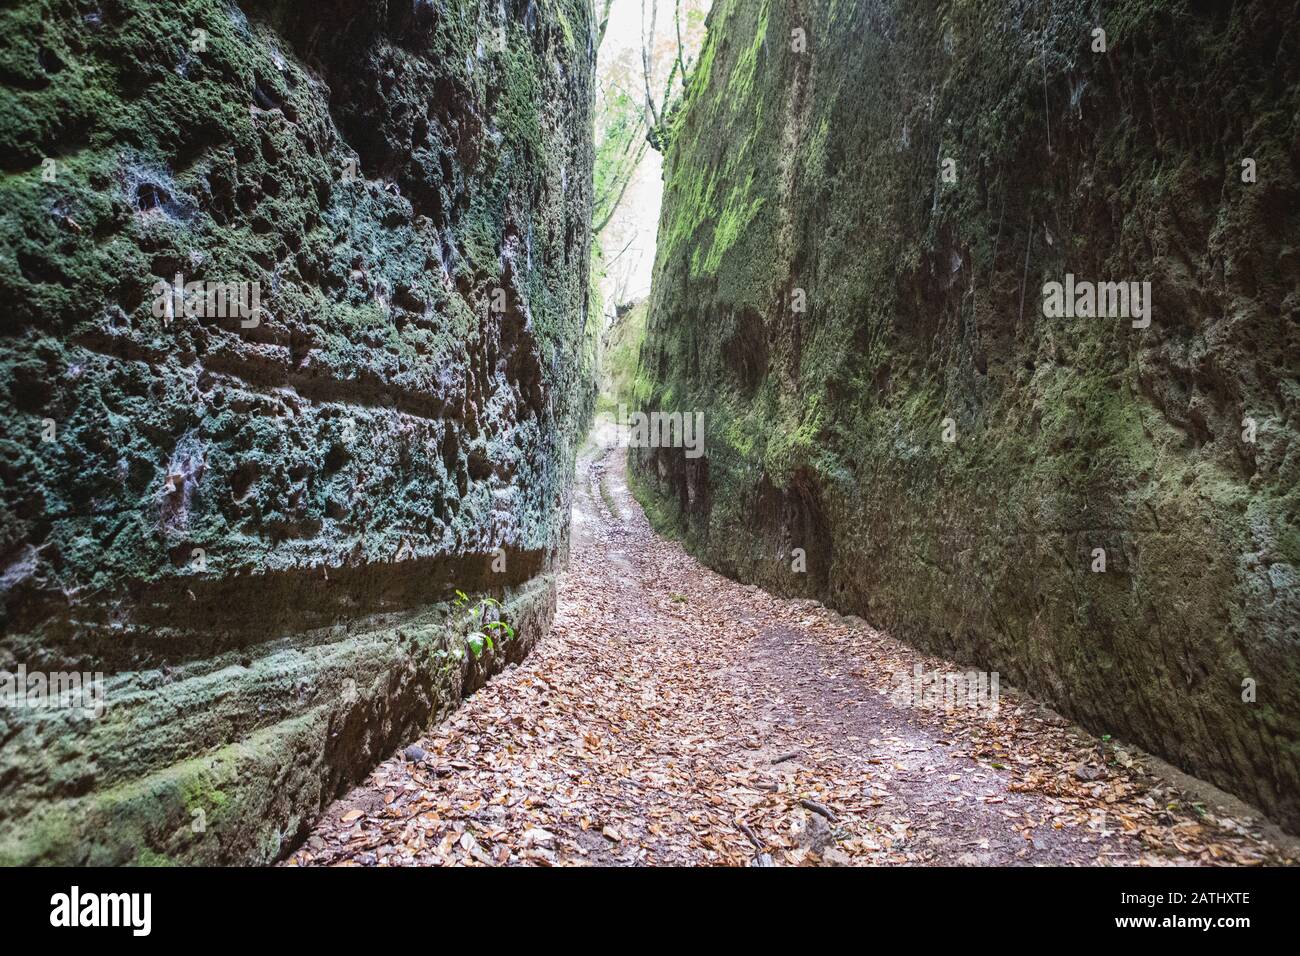 Der enge Pfad, der von der etruskischen Zivilisation im Felsen ausgegraben wurde, benannte die Vie Cave in der Toskana, im Zentrum Italiens, zwischen Pitigliano und Sorano Stockfoto